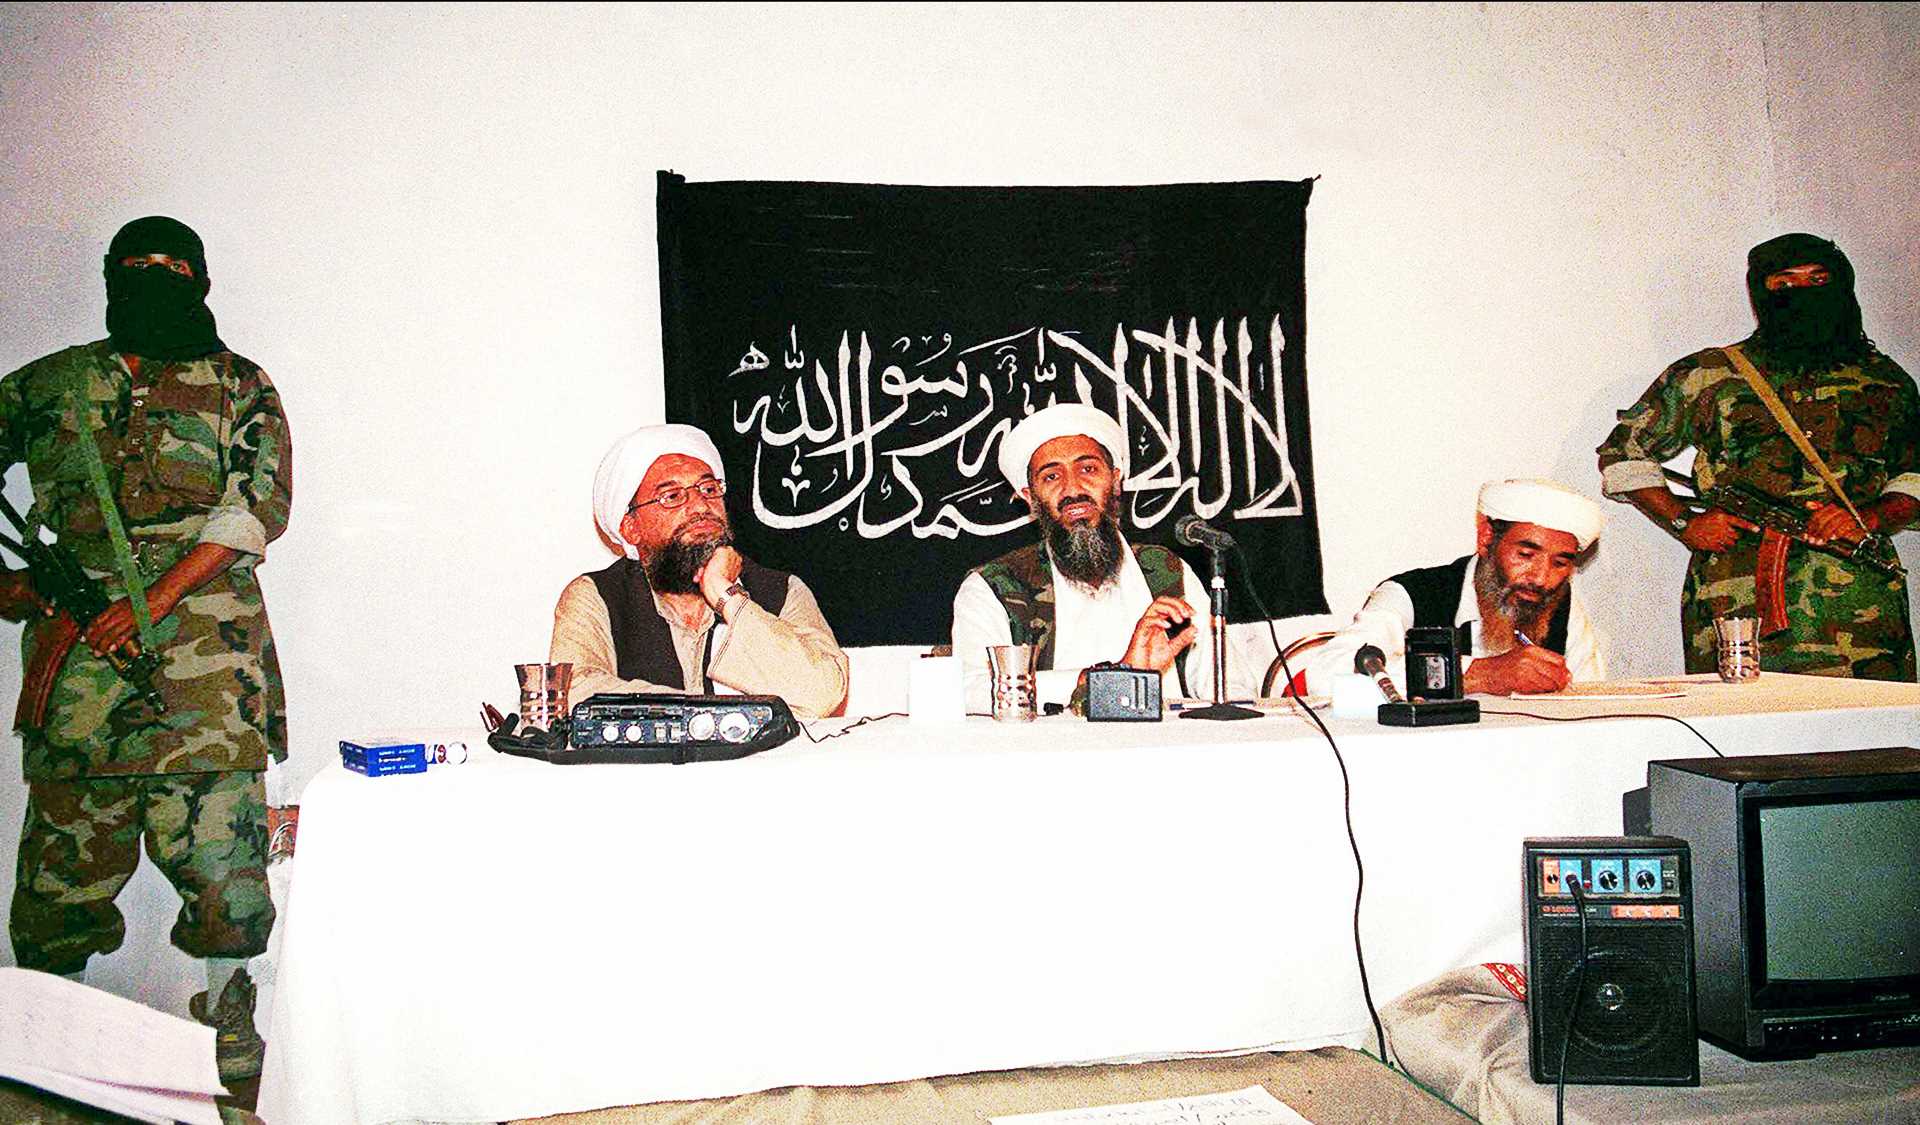 Le meurtre de Zawahiri par les États-Unis était plus une vengeance qu’une prévention